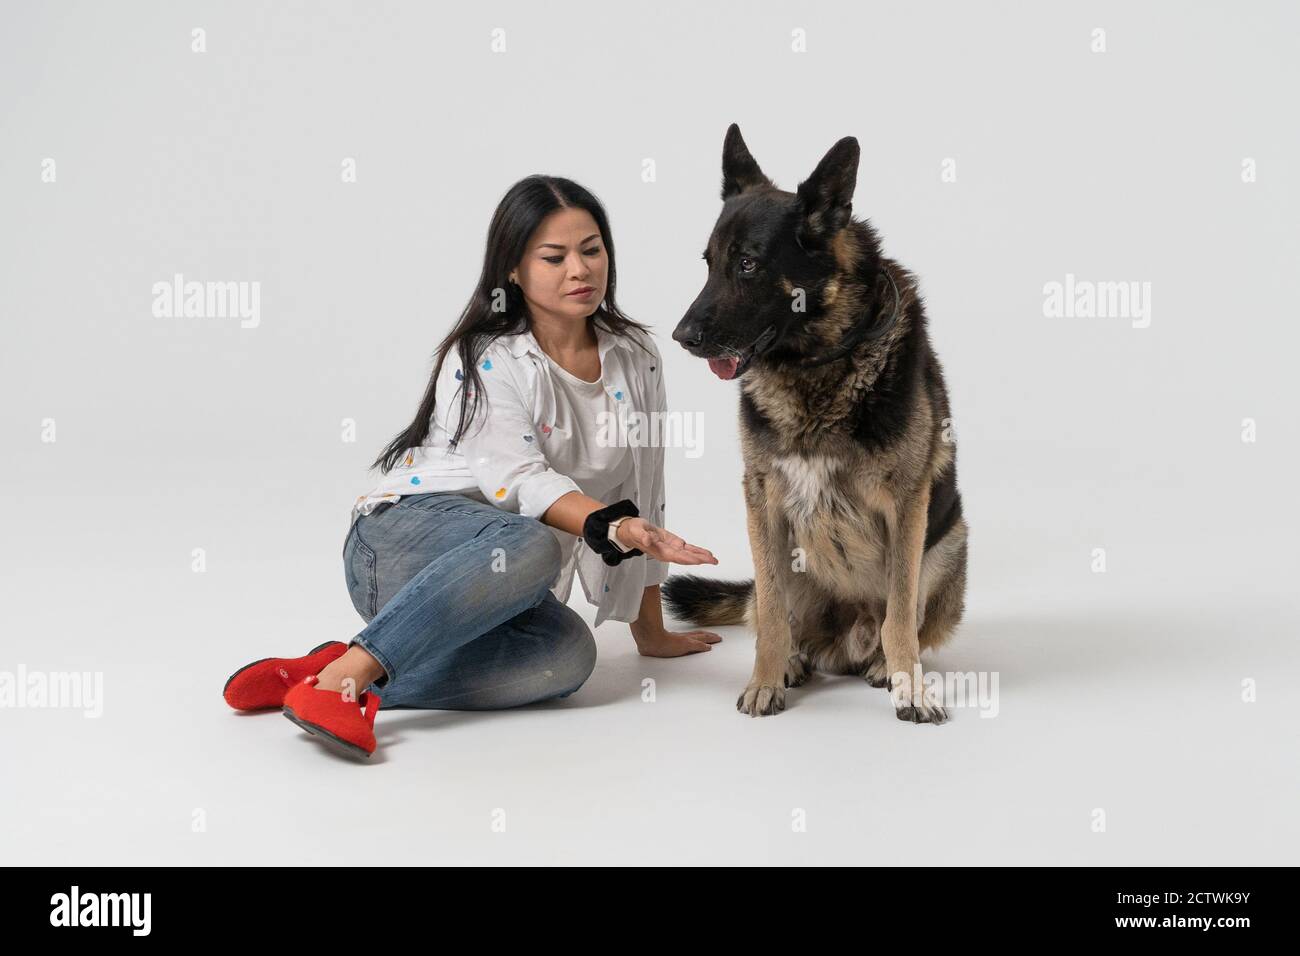 La donna asiatica chiede a un cane da pastore di dare una zampa su uno sfondo isolato. Giovane donna e un cane si siedono sul pavimento dello studio. Foto di alta qualità Foto Stock